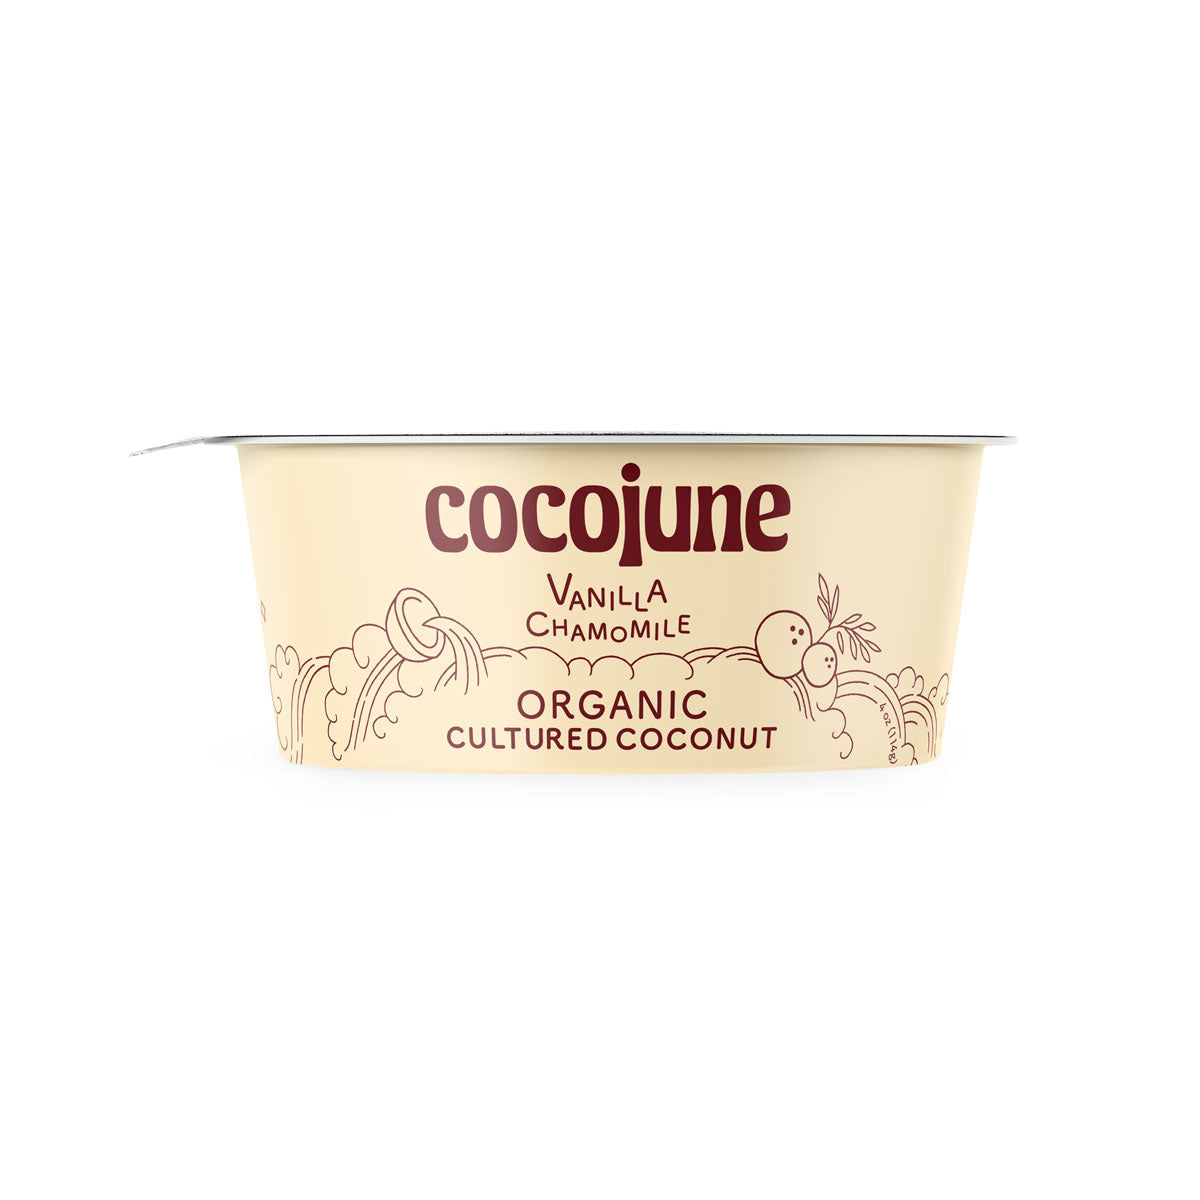 Cocojune Organic Vegan Vanilla Chamomile Coconut Yogurt 4 OZ